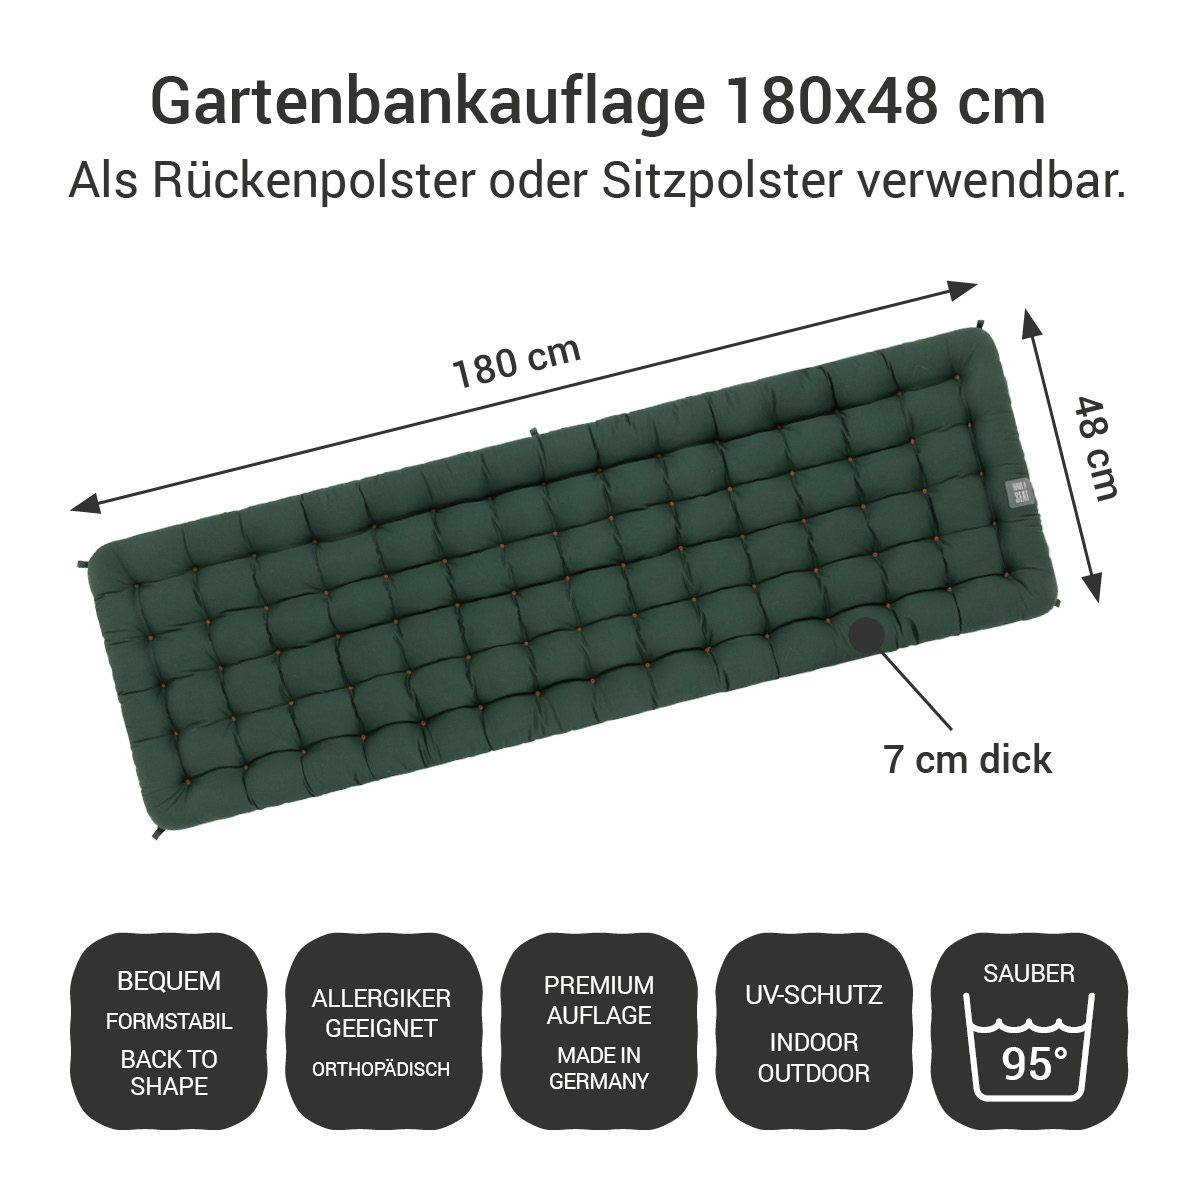 Gartenbankauflage dunkelgrün | 180x48 cm / 180 x 50 cm | bequem & orthopädisch, komplett im Ganzen waschbar bis 95°C, wetterfest, Made in Germany